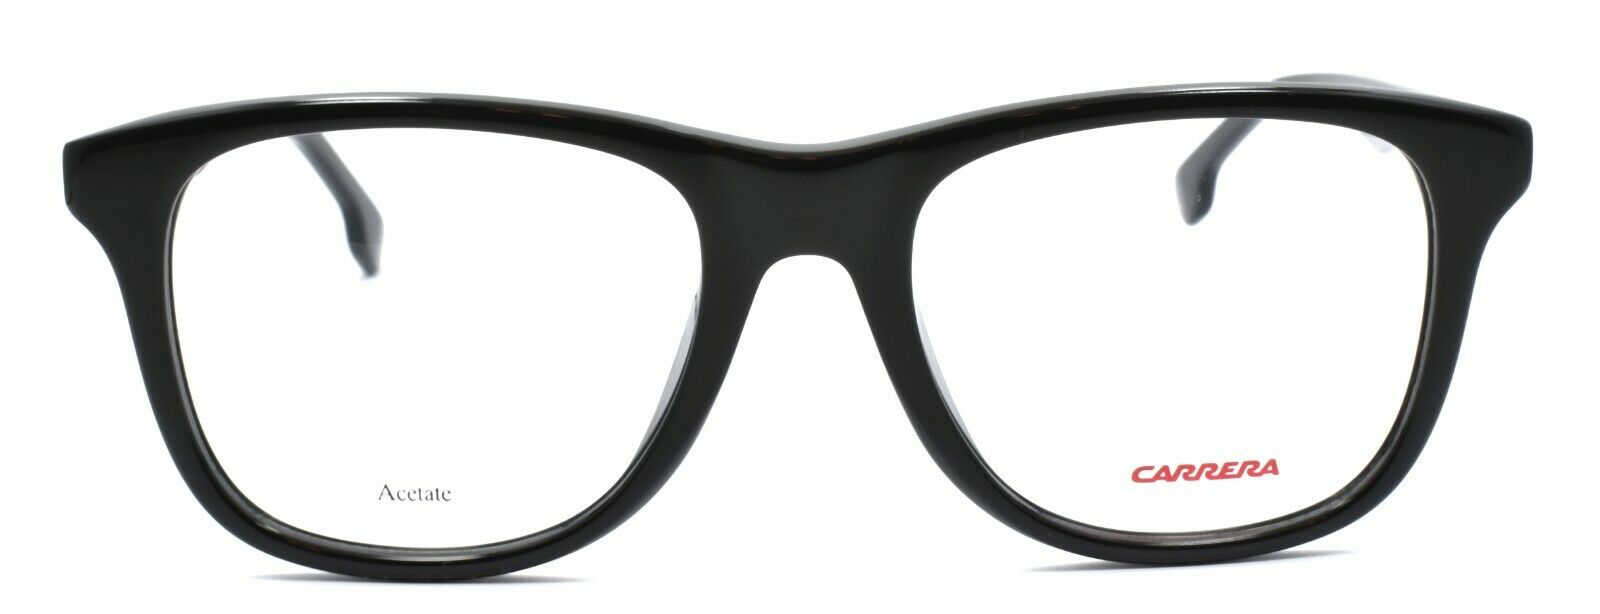 2-Carrera 135/V 807 Men's Eyeglasses Frames 52-19-145 Black + CASE-762753597250-IKSpecs